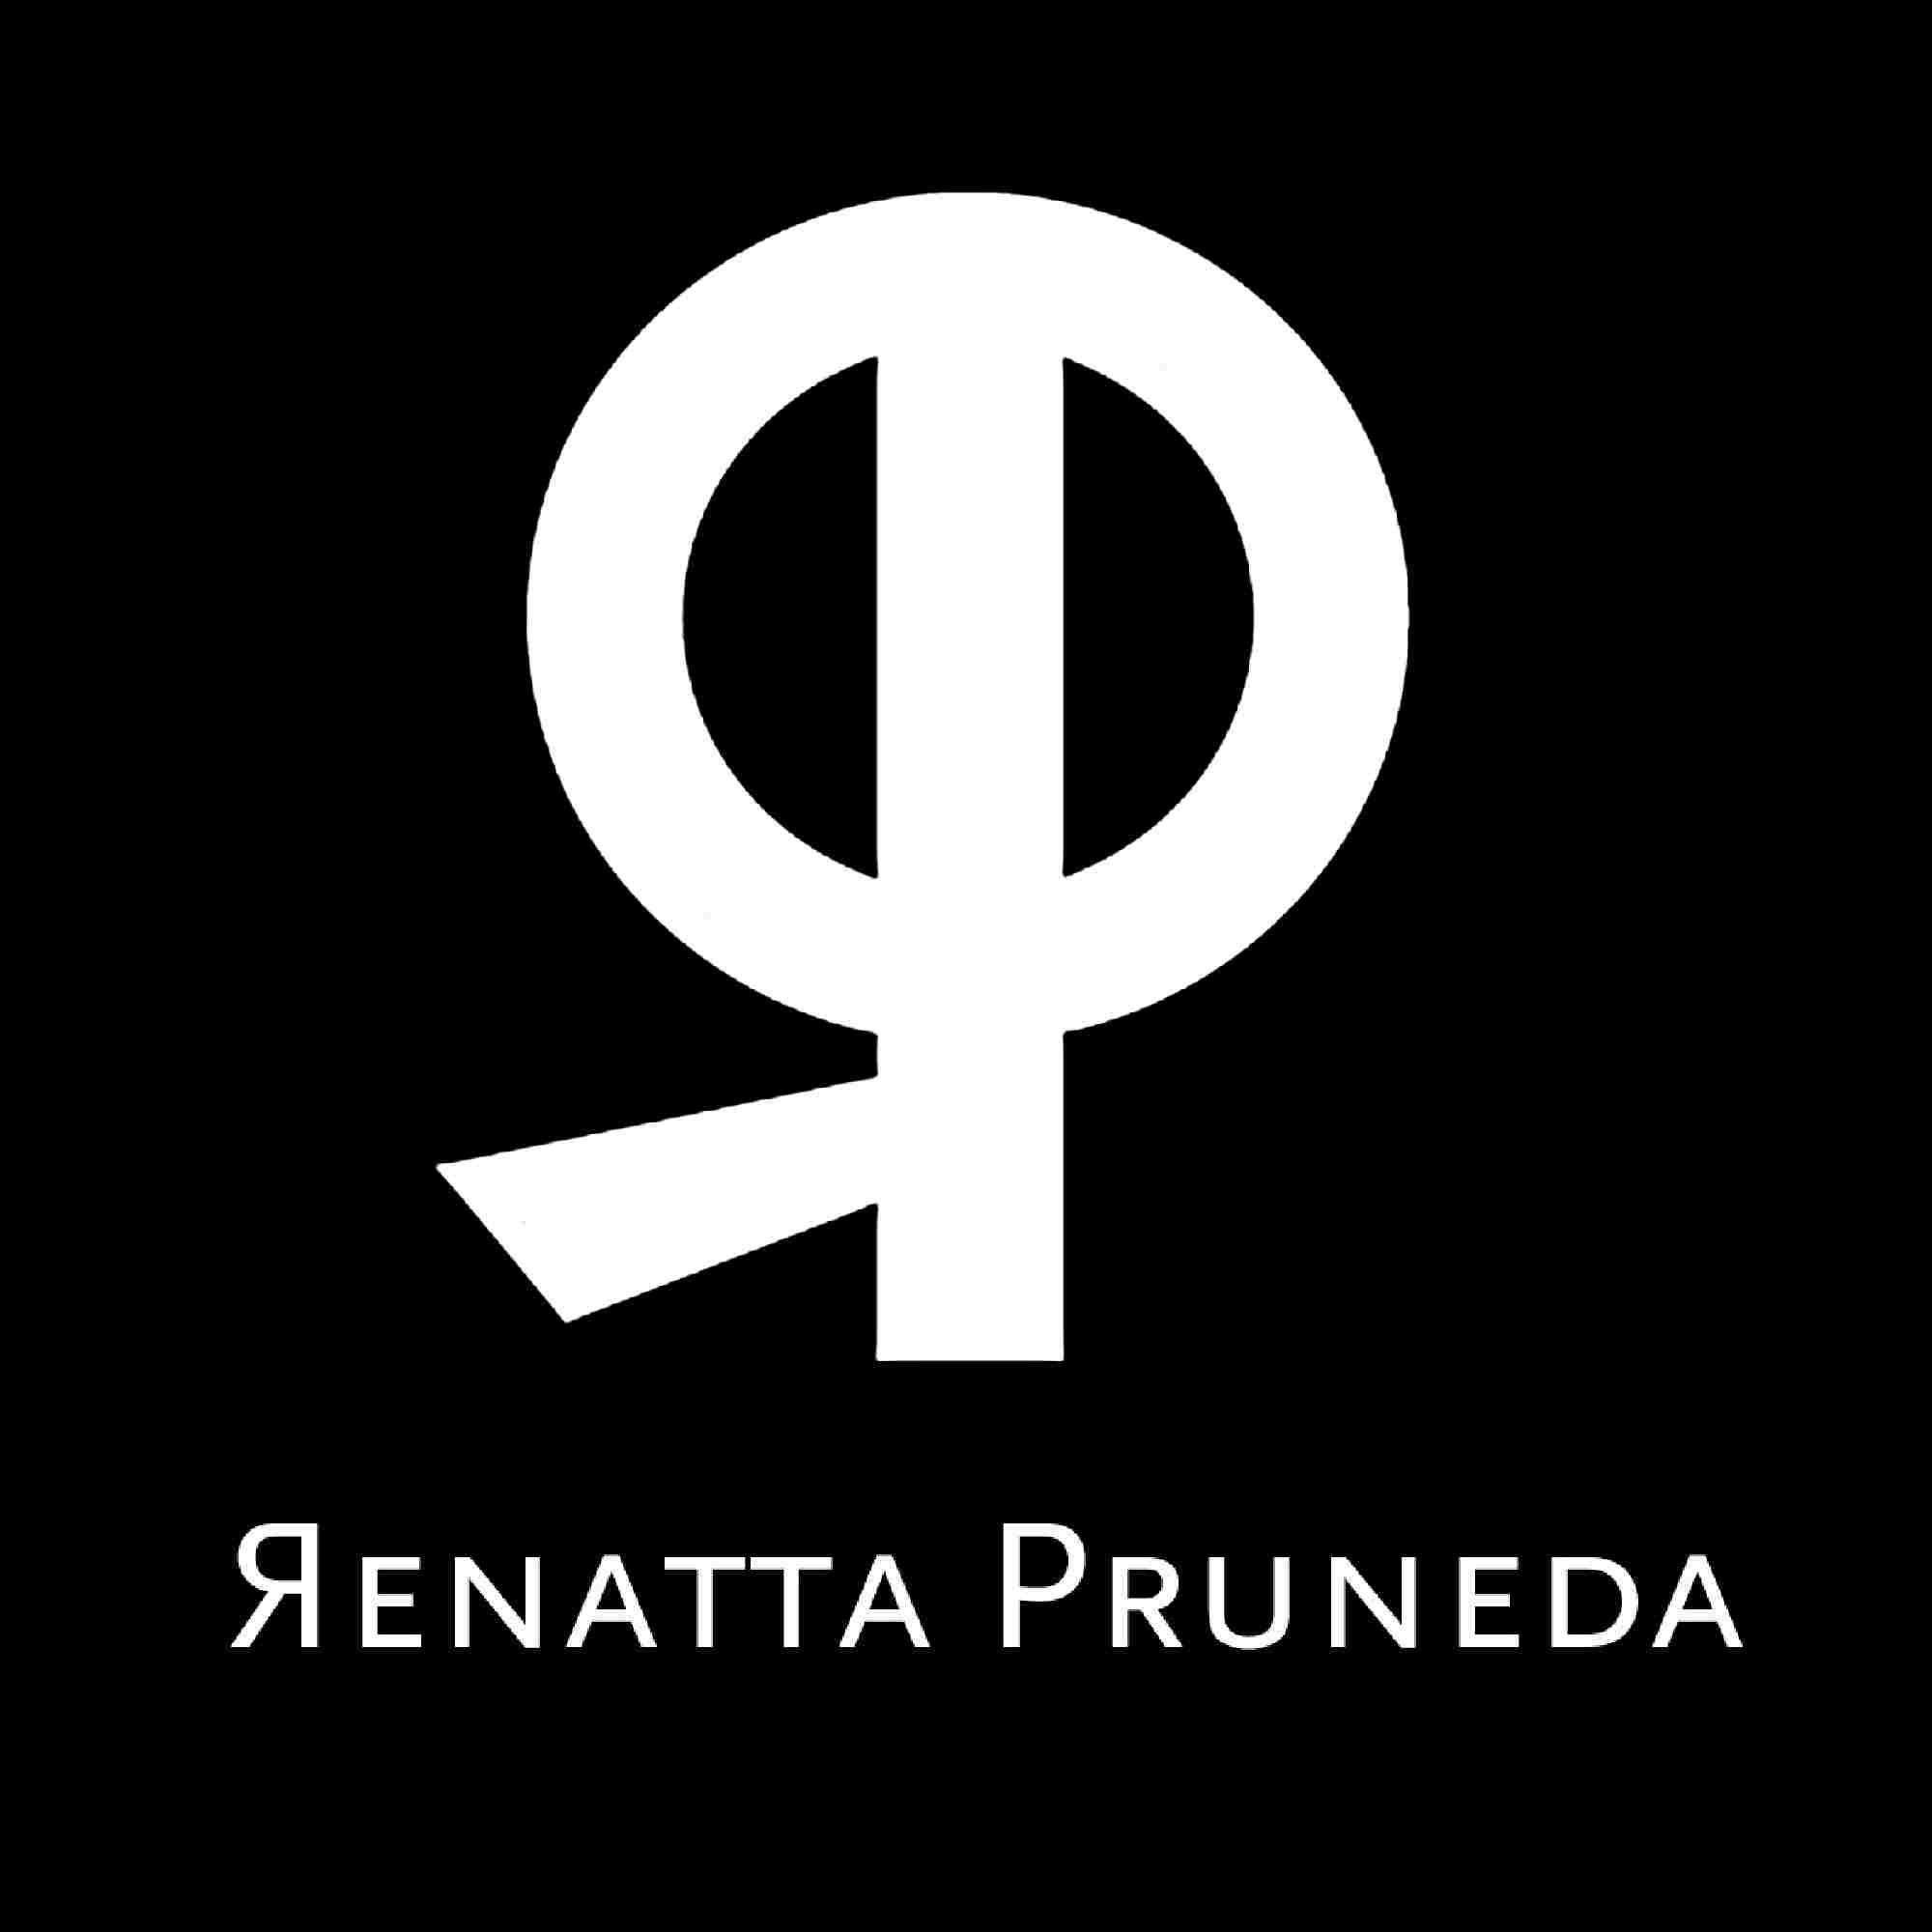 www.renattapruneda.com